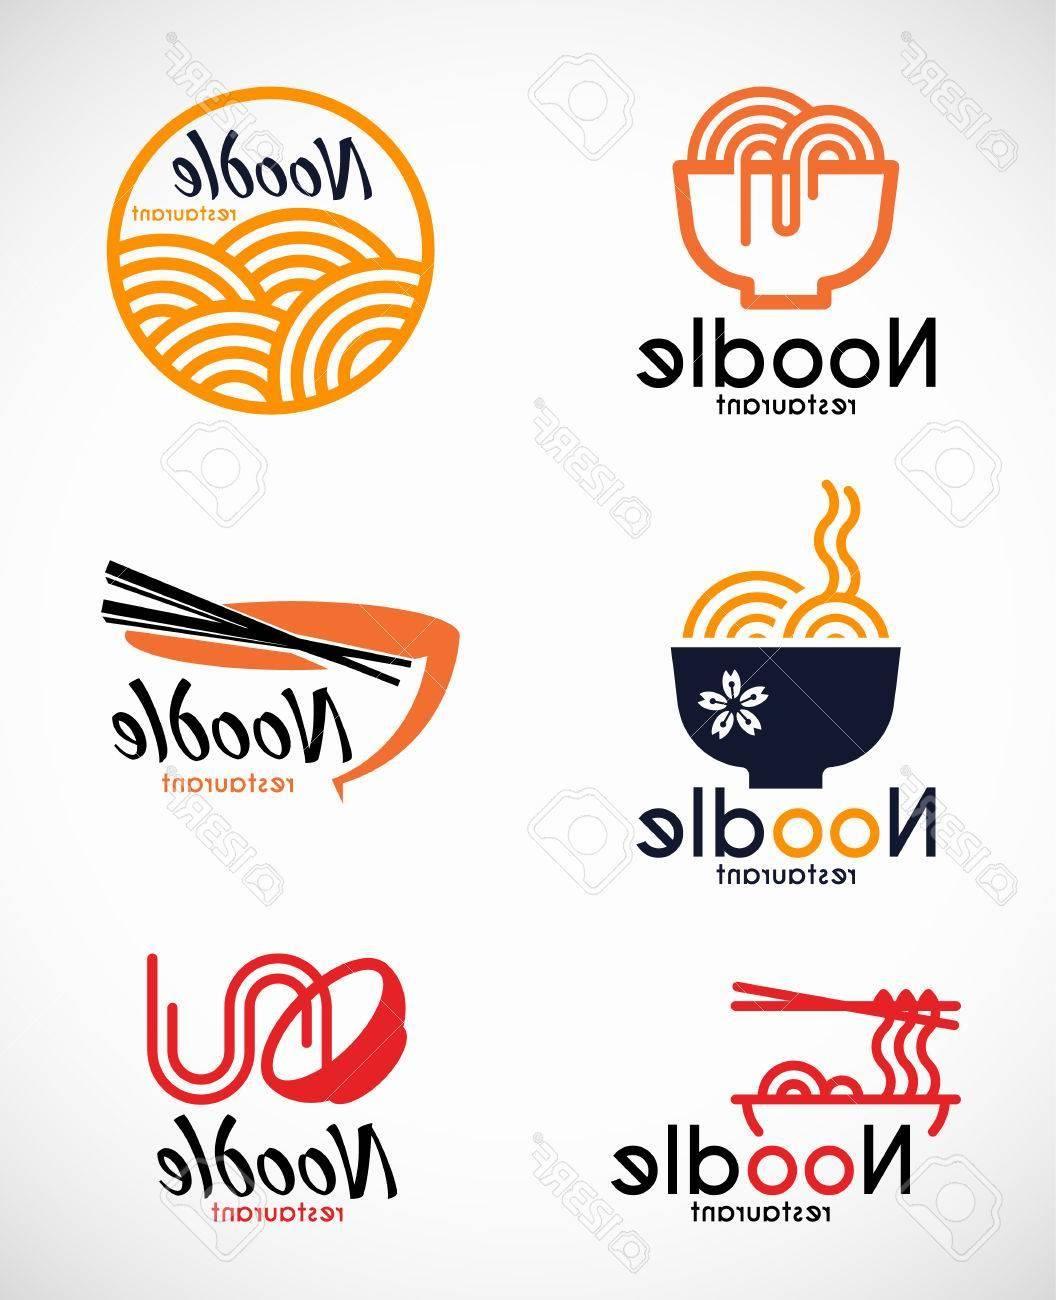 Noodle Logo - Top 10 Noodle Restaurant And Food Logo Vector Design Images